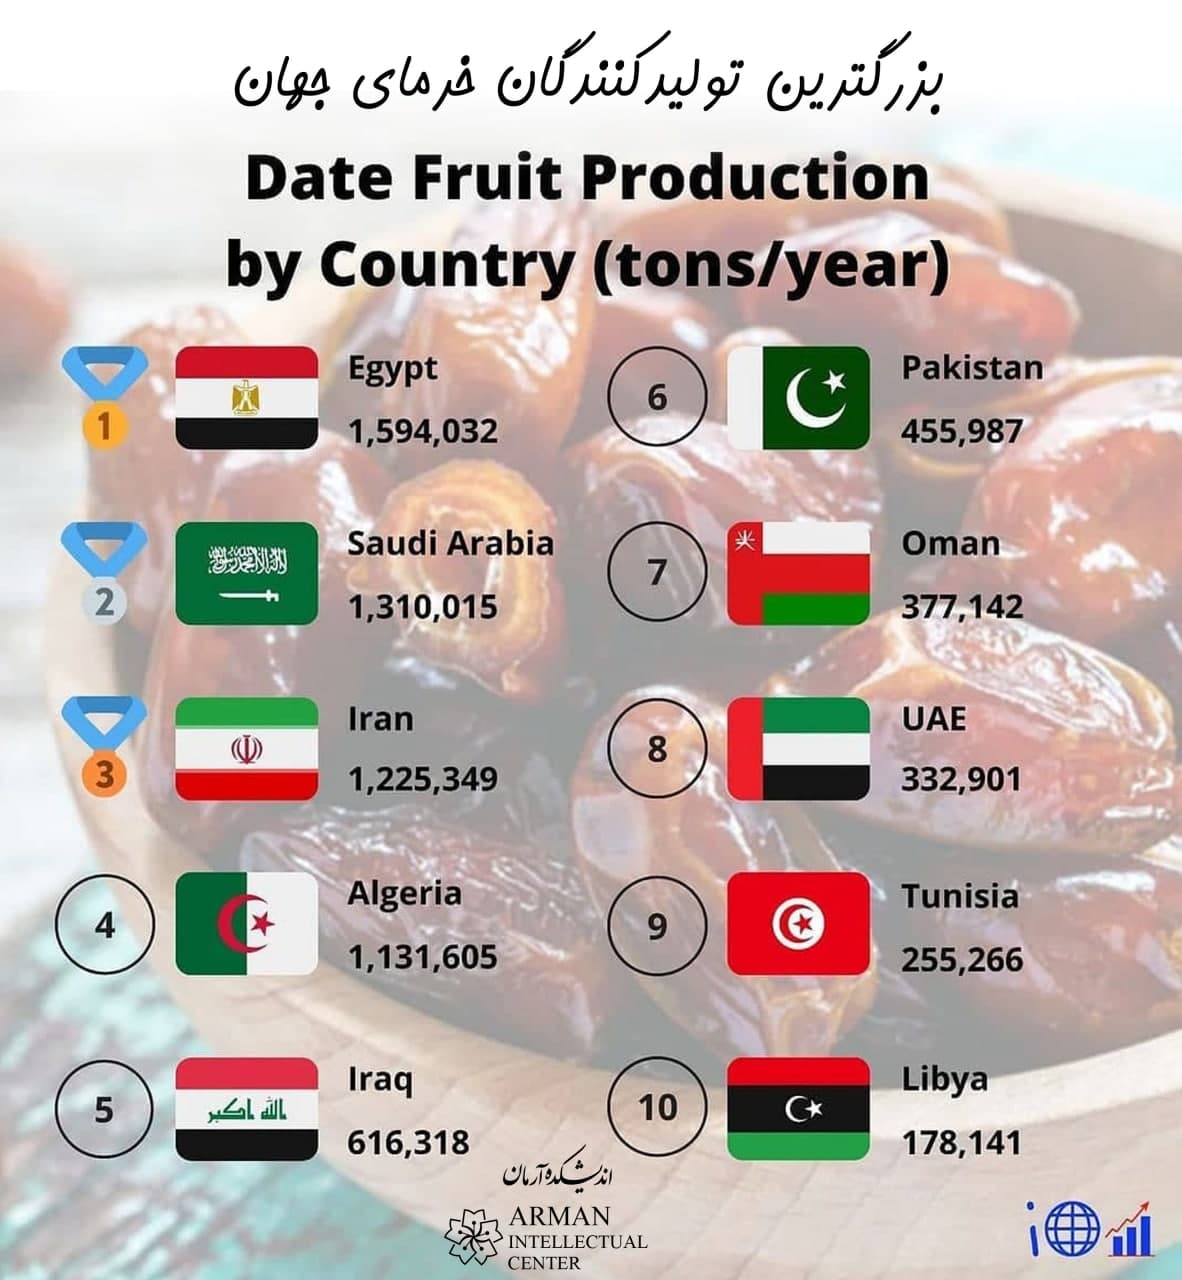 Date Fruit Production